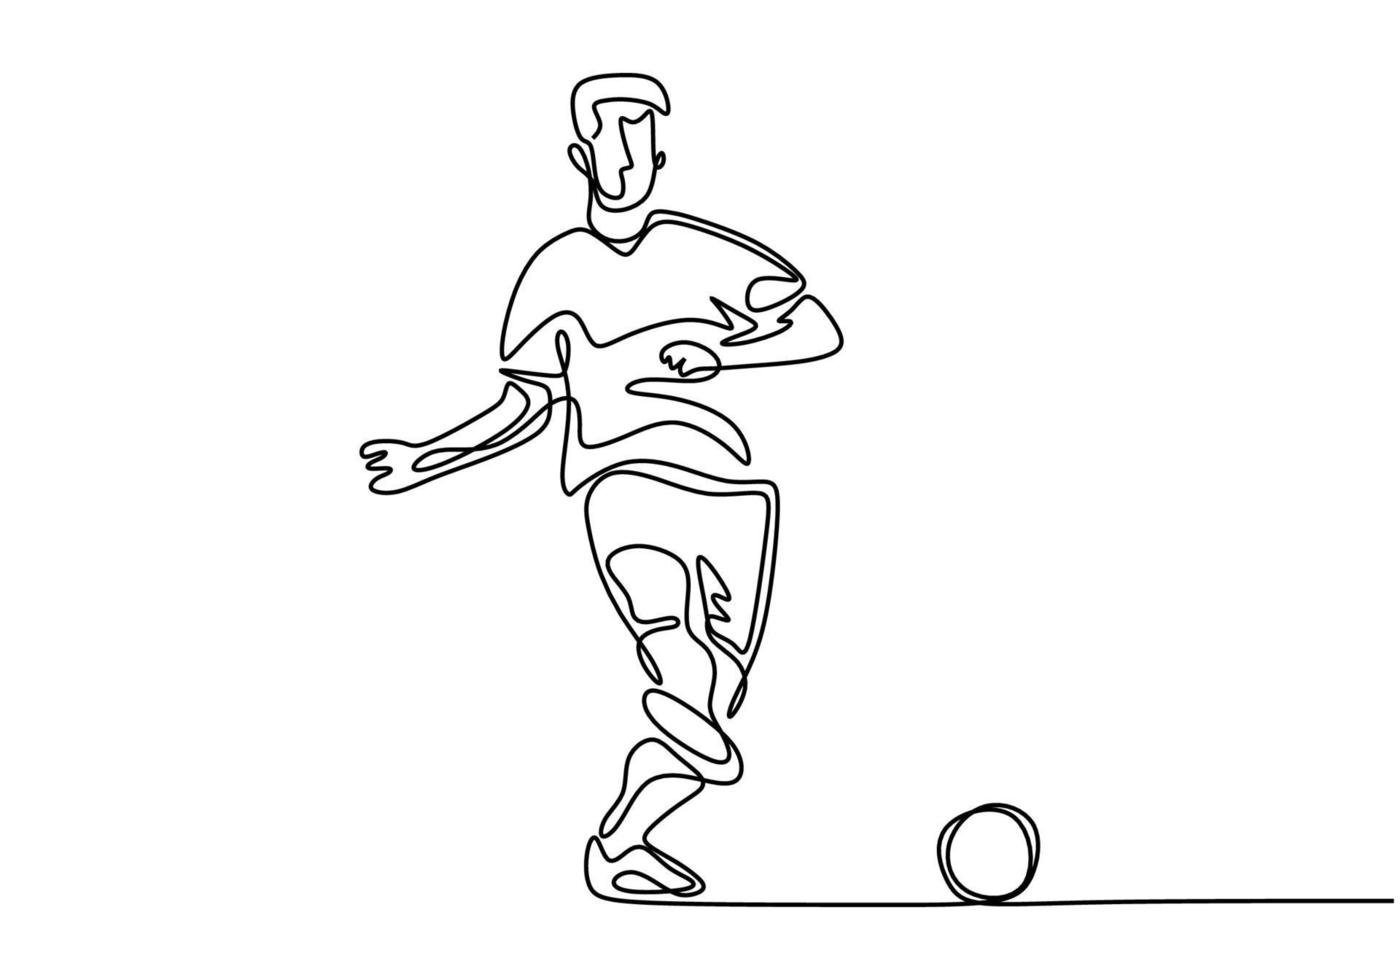 dibujo continuo de una línea de jugador de fútbol patear una pelota vector